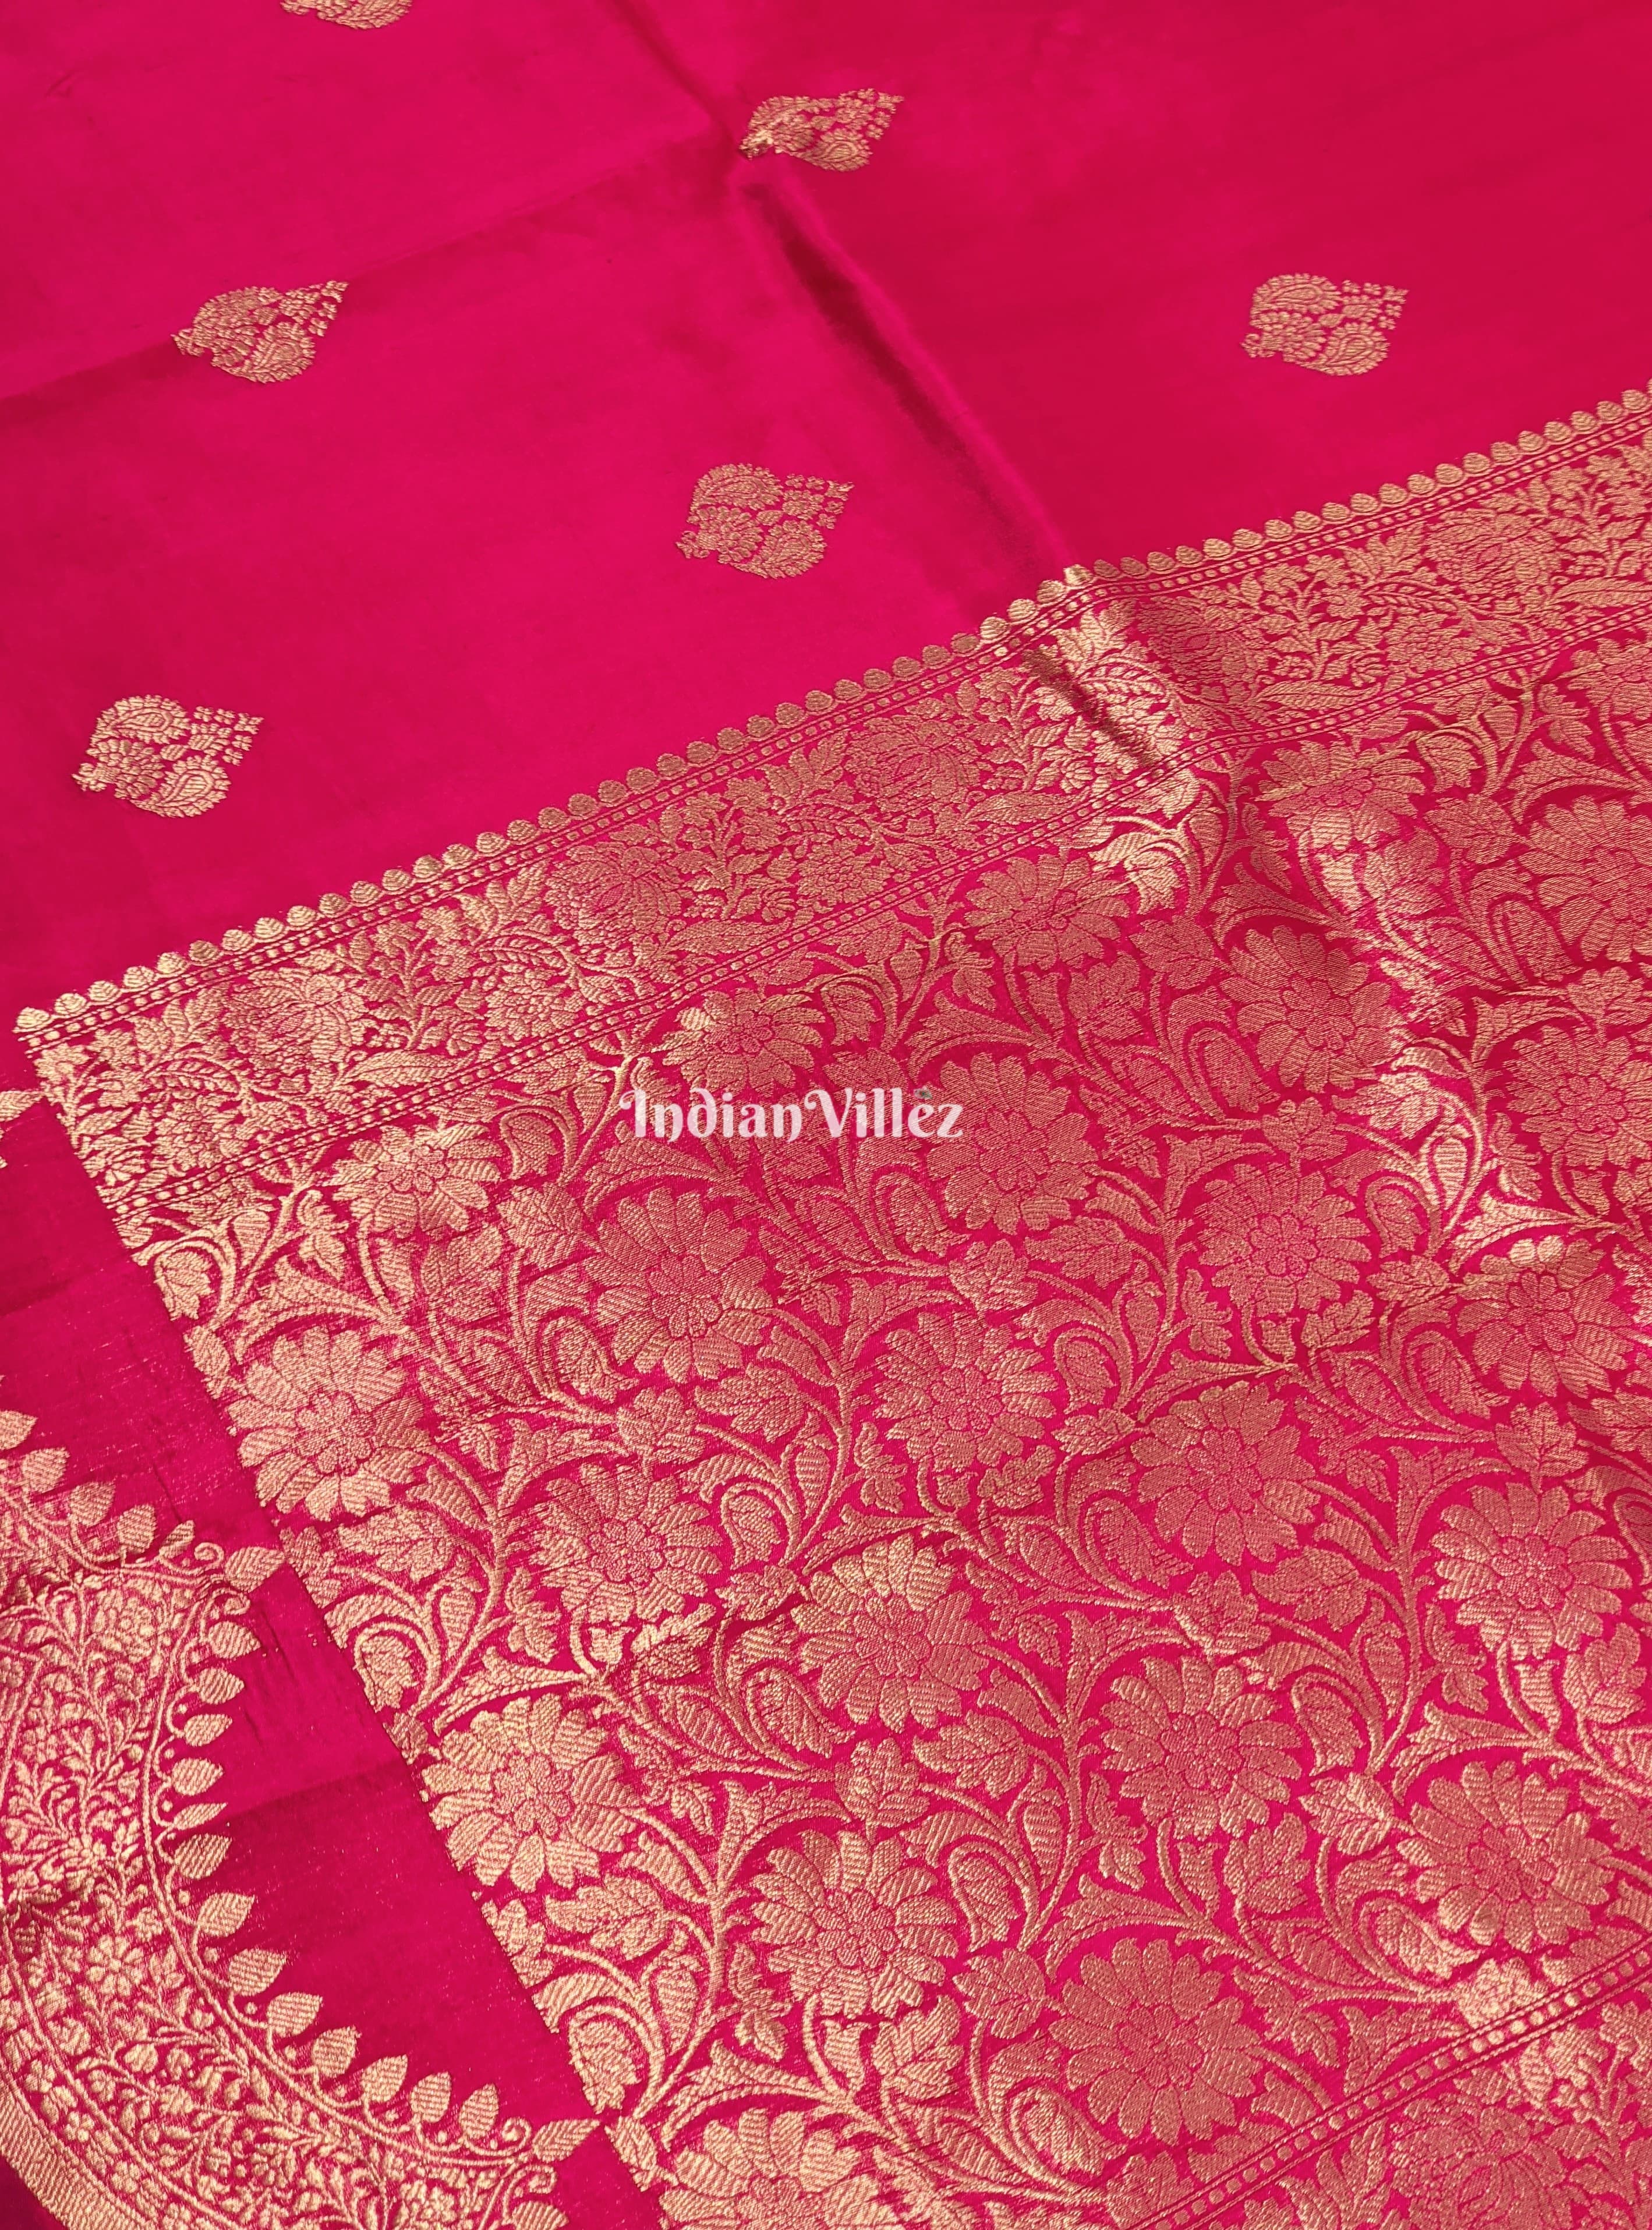 Rani Pink Banarasi Katan Saree with Golden Flower Motif